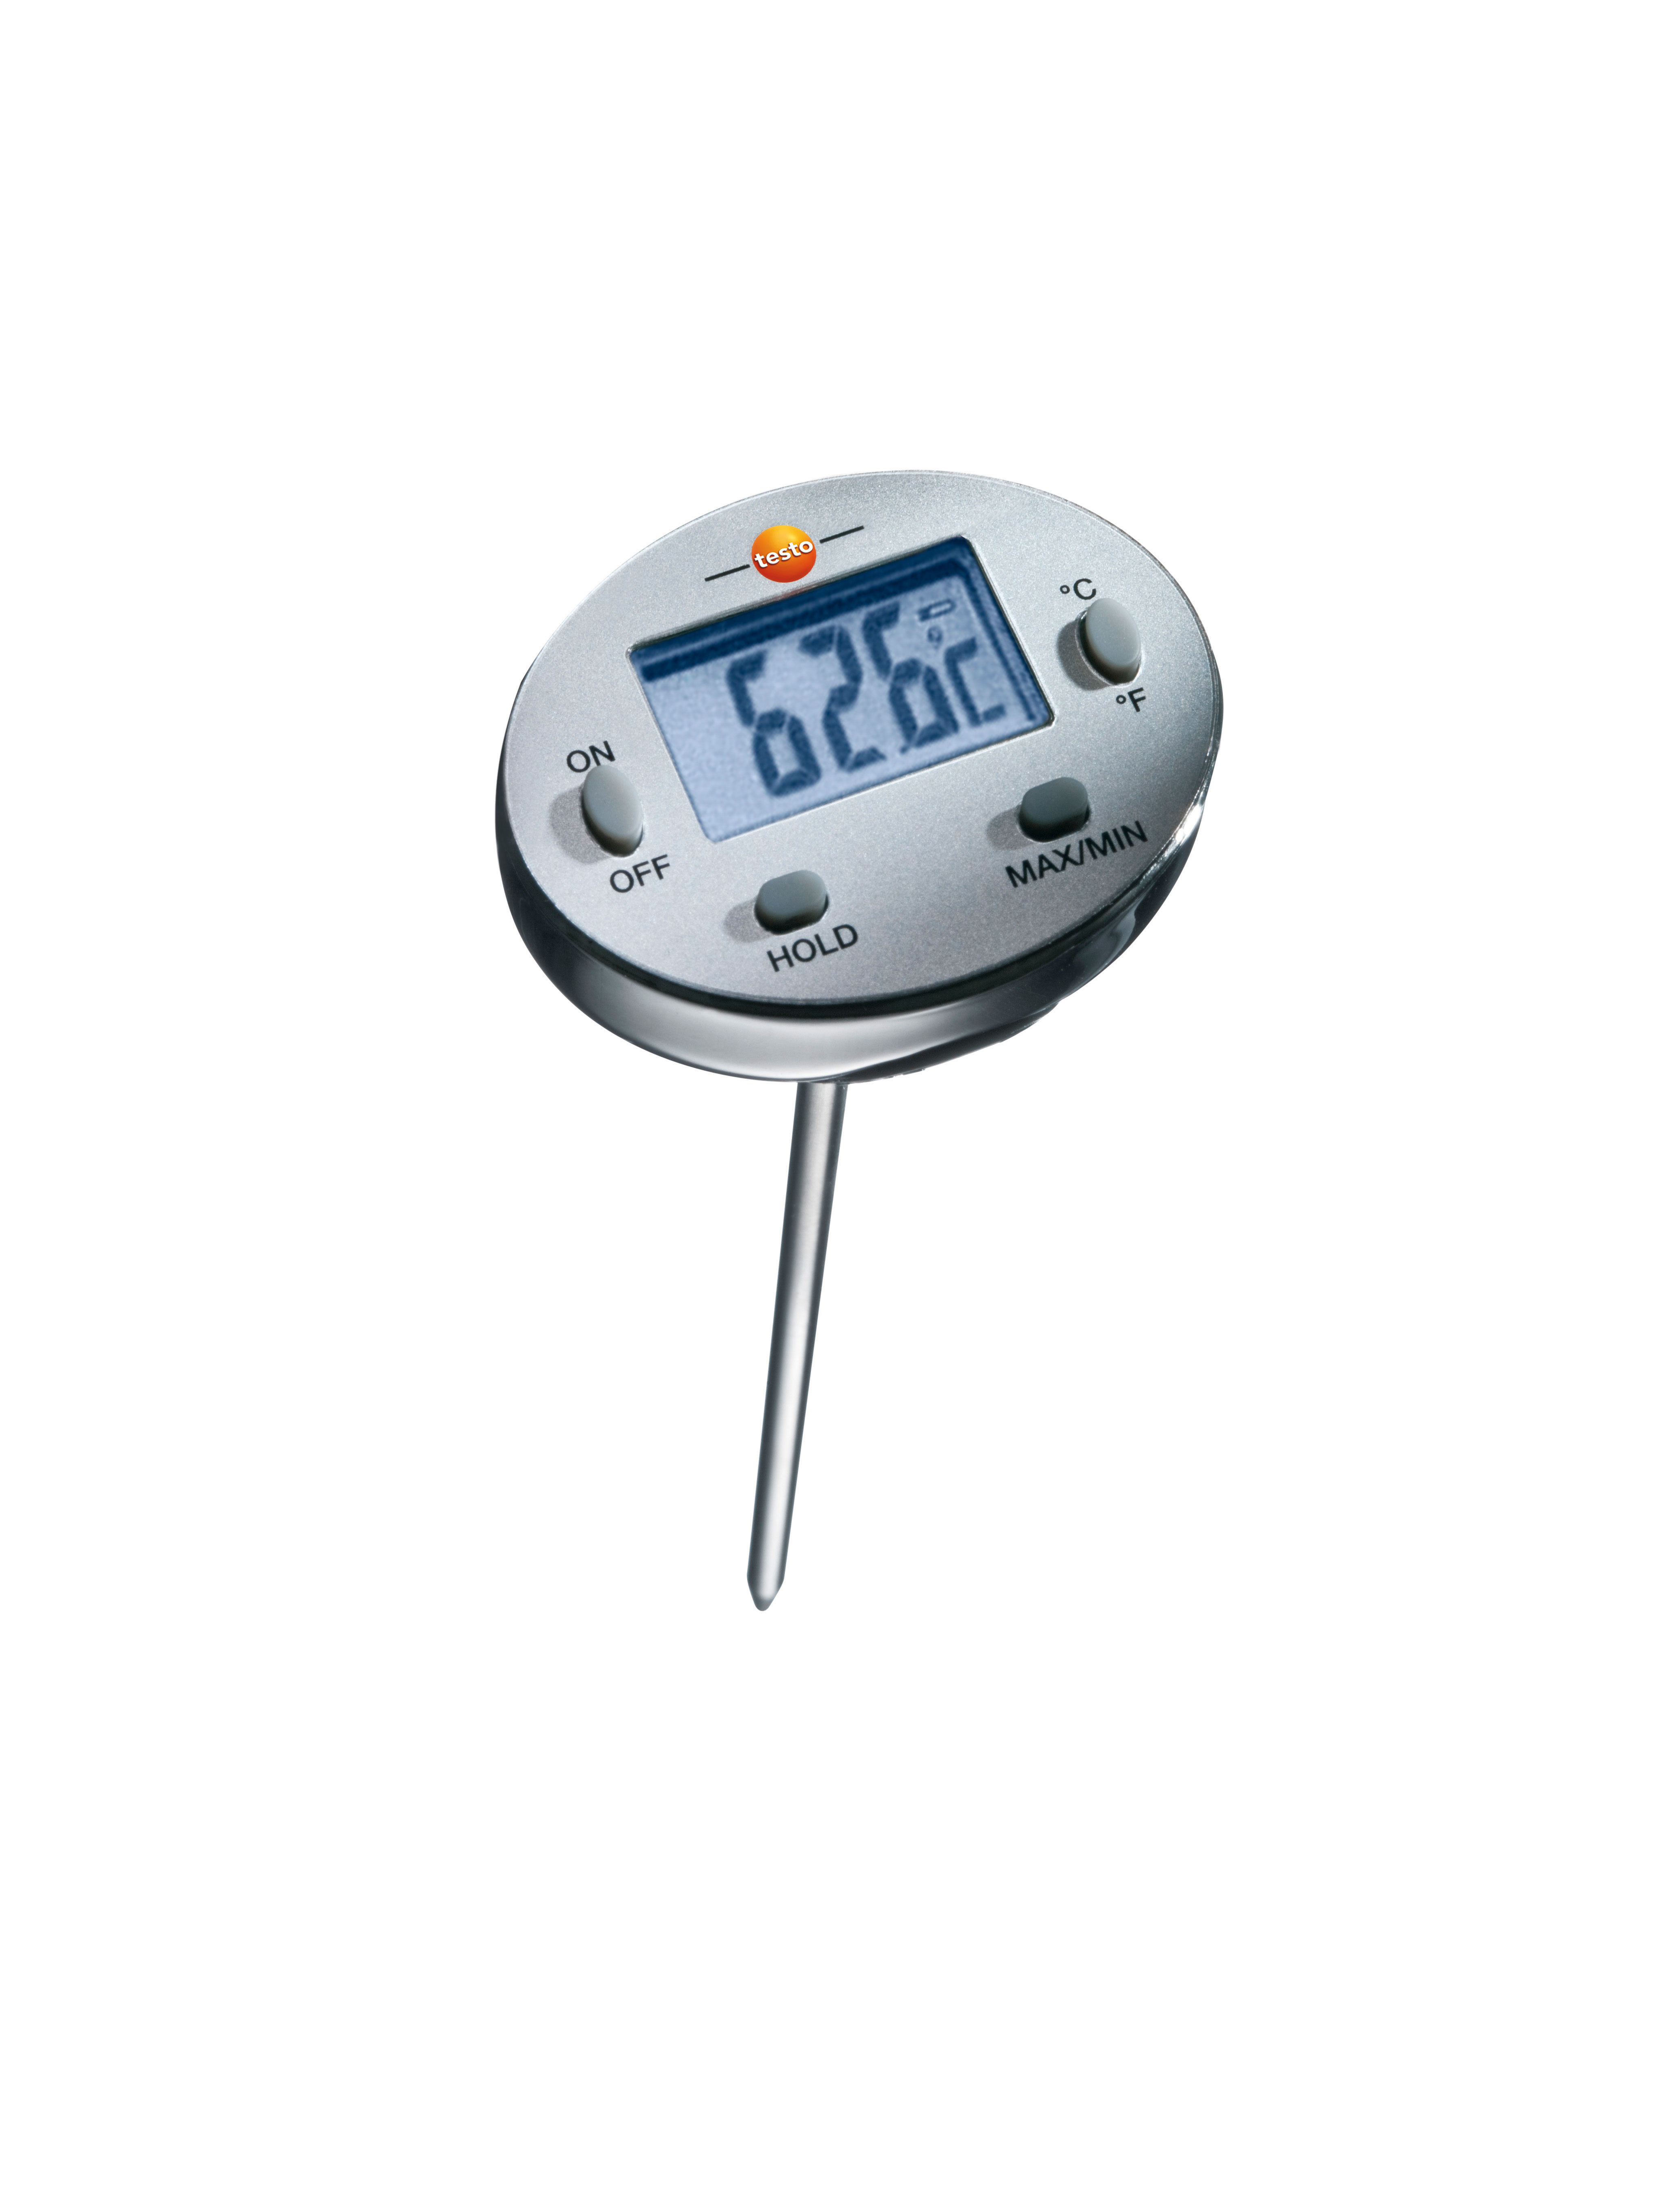 Mini Testo thermometers